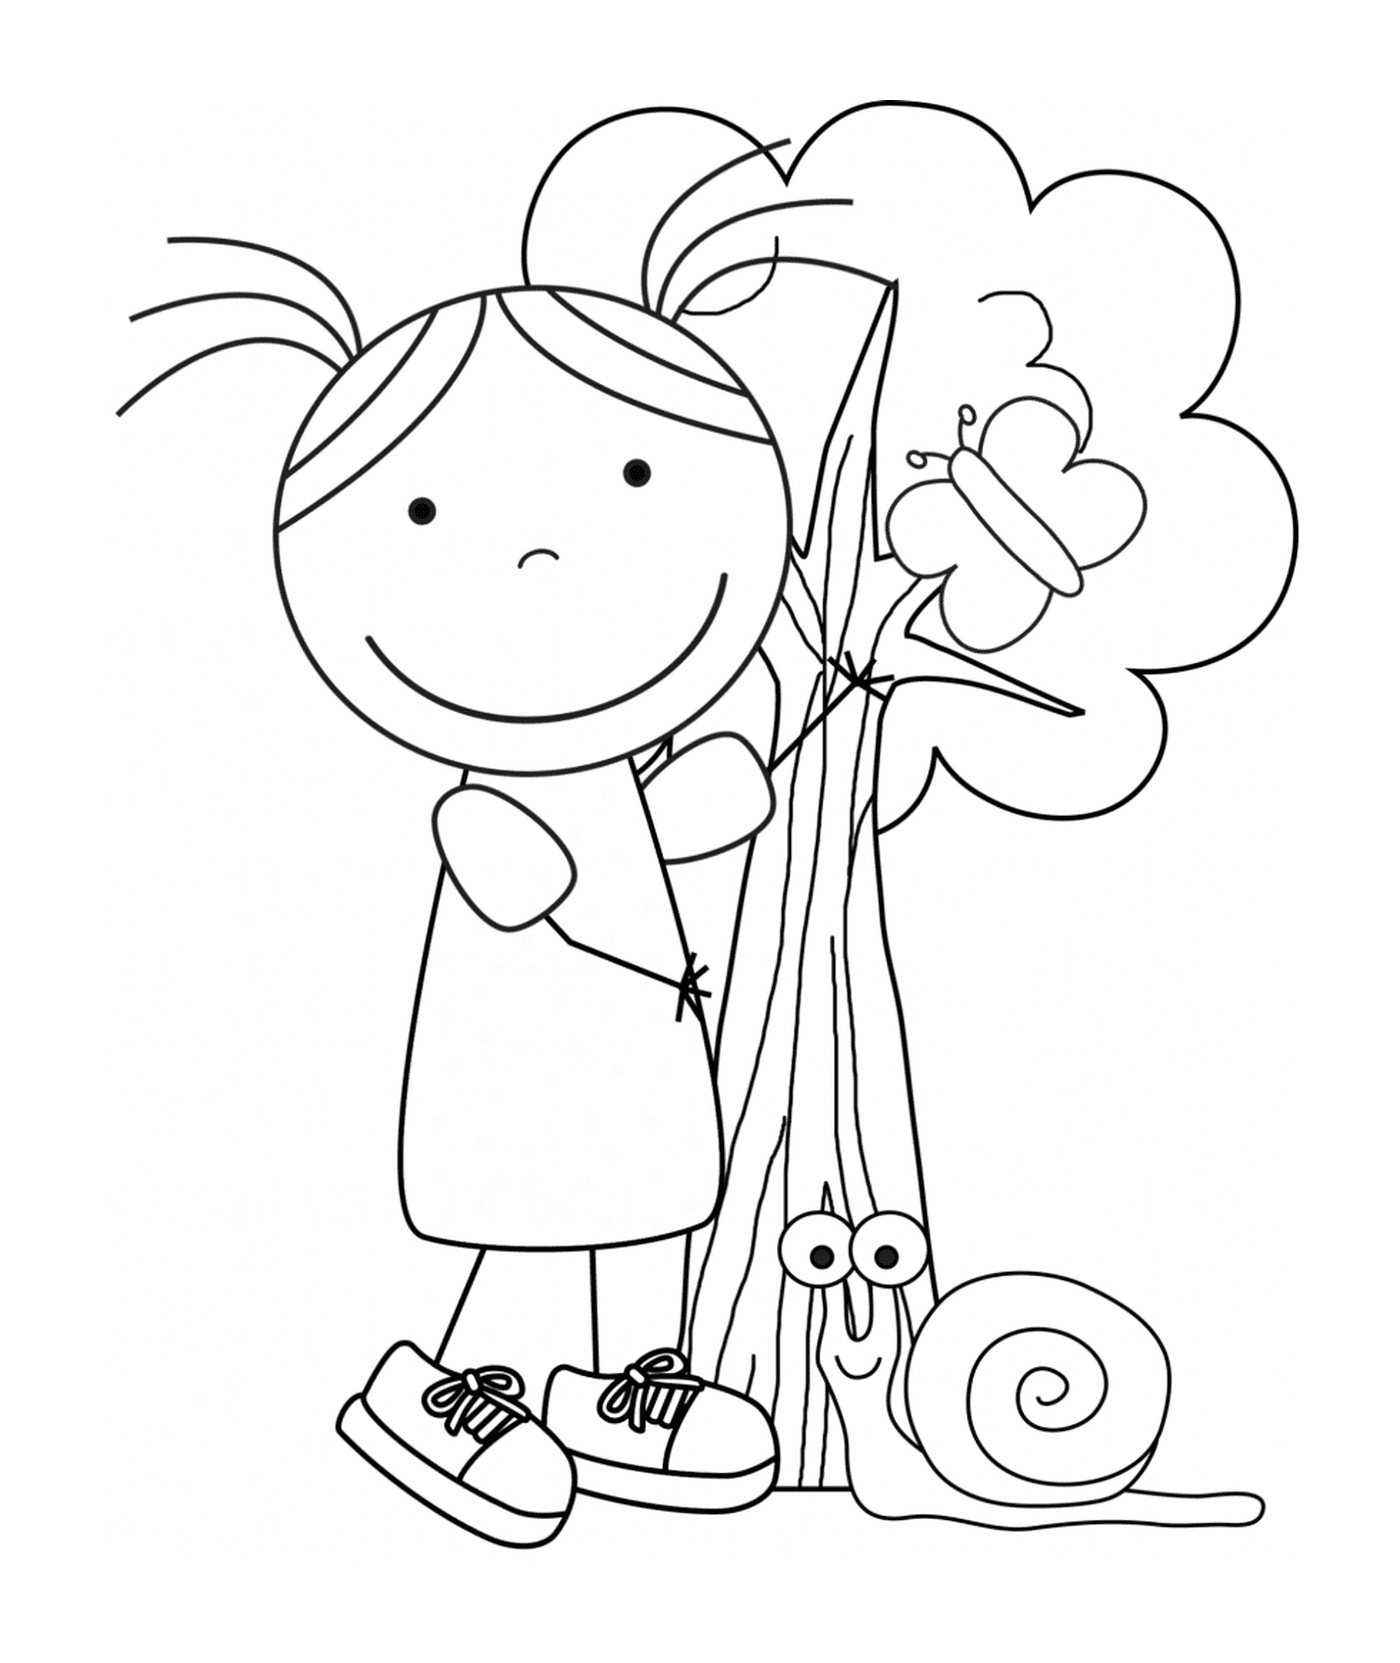  Bambini per la Giornata della Terra, una ragazza e una lumaca 